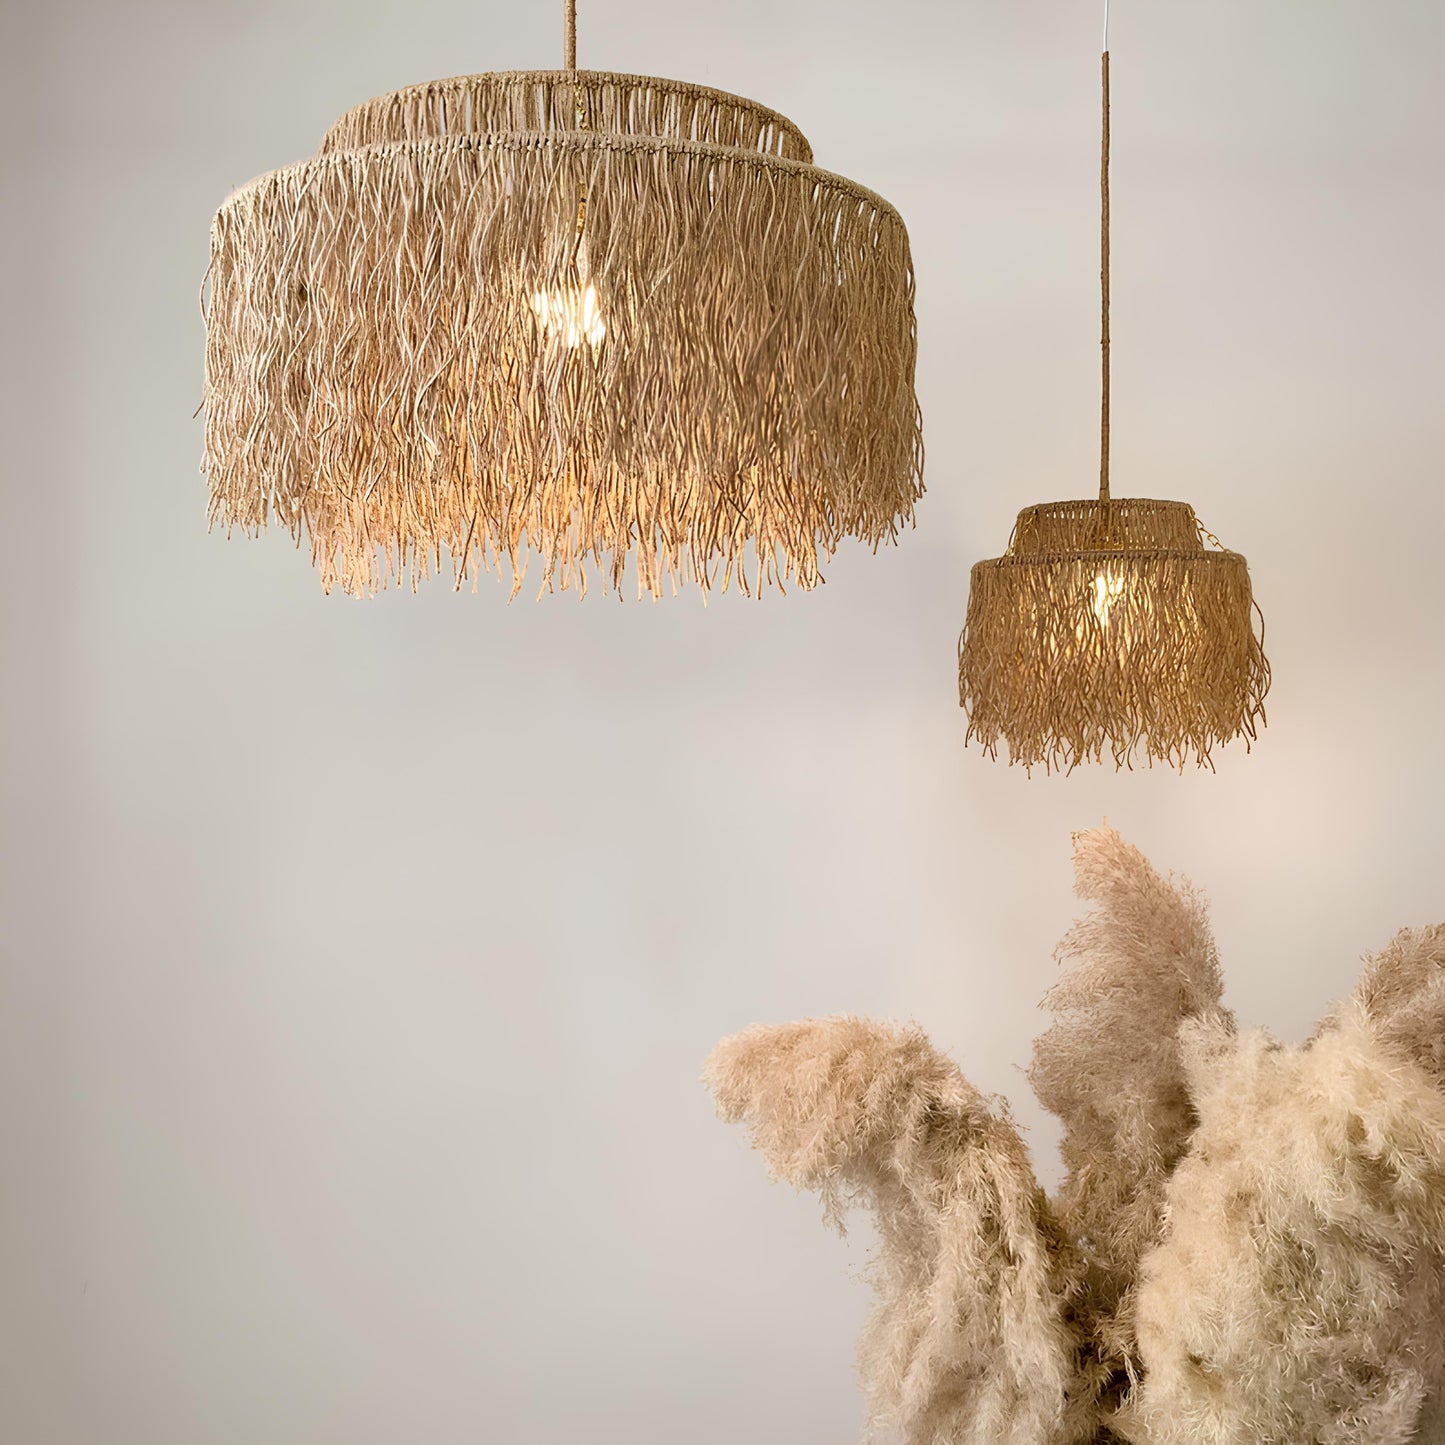 Bamboo Hanging lamp for Living Room | Rattan Pendant light | Cane ceiling light - Dasya - Akway